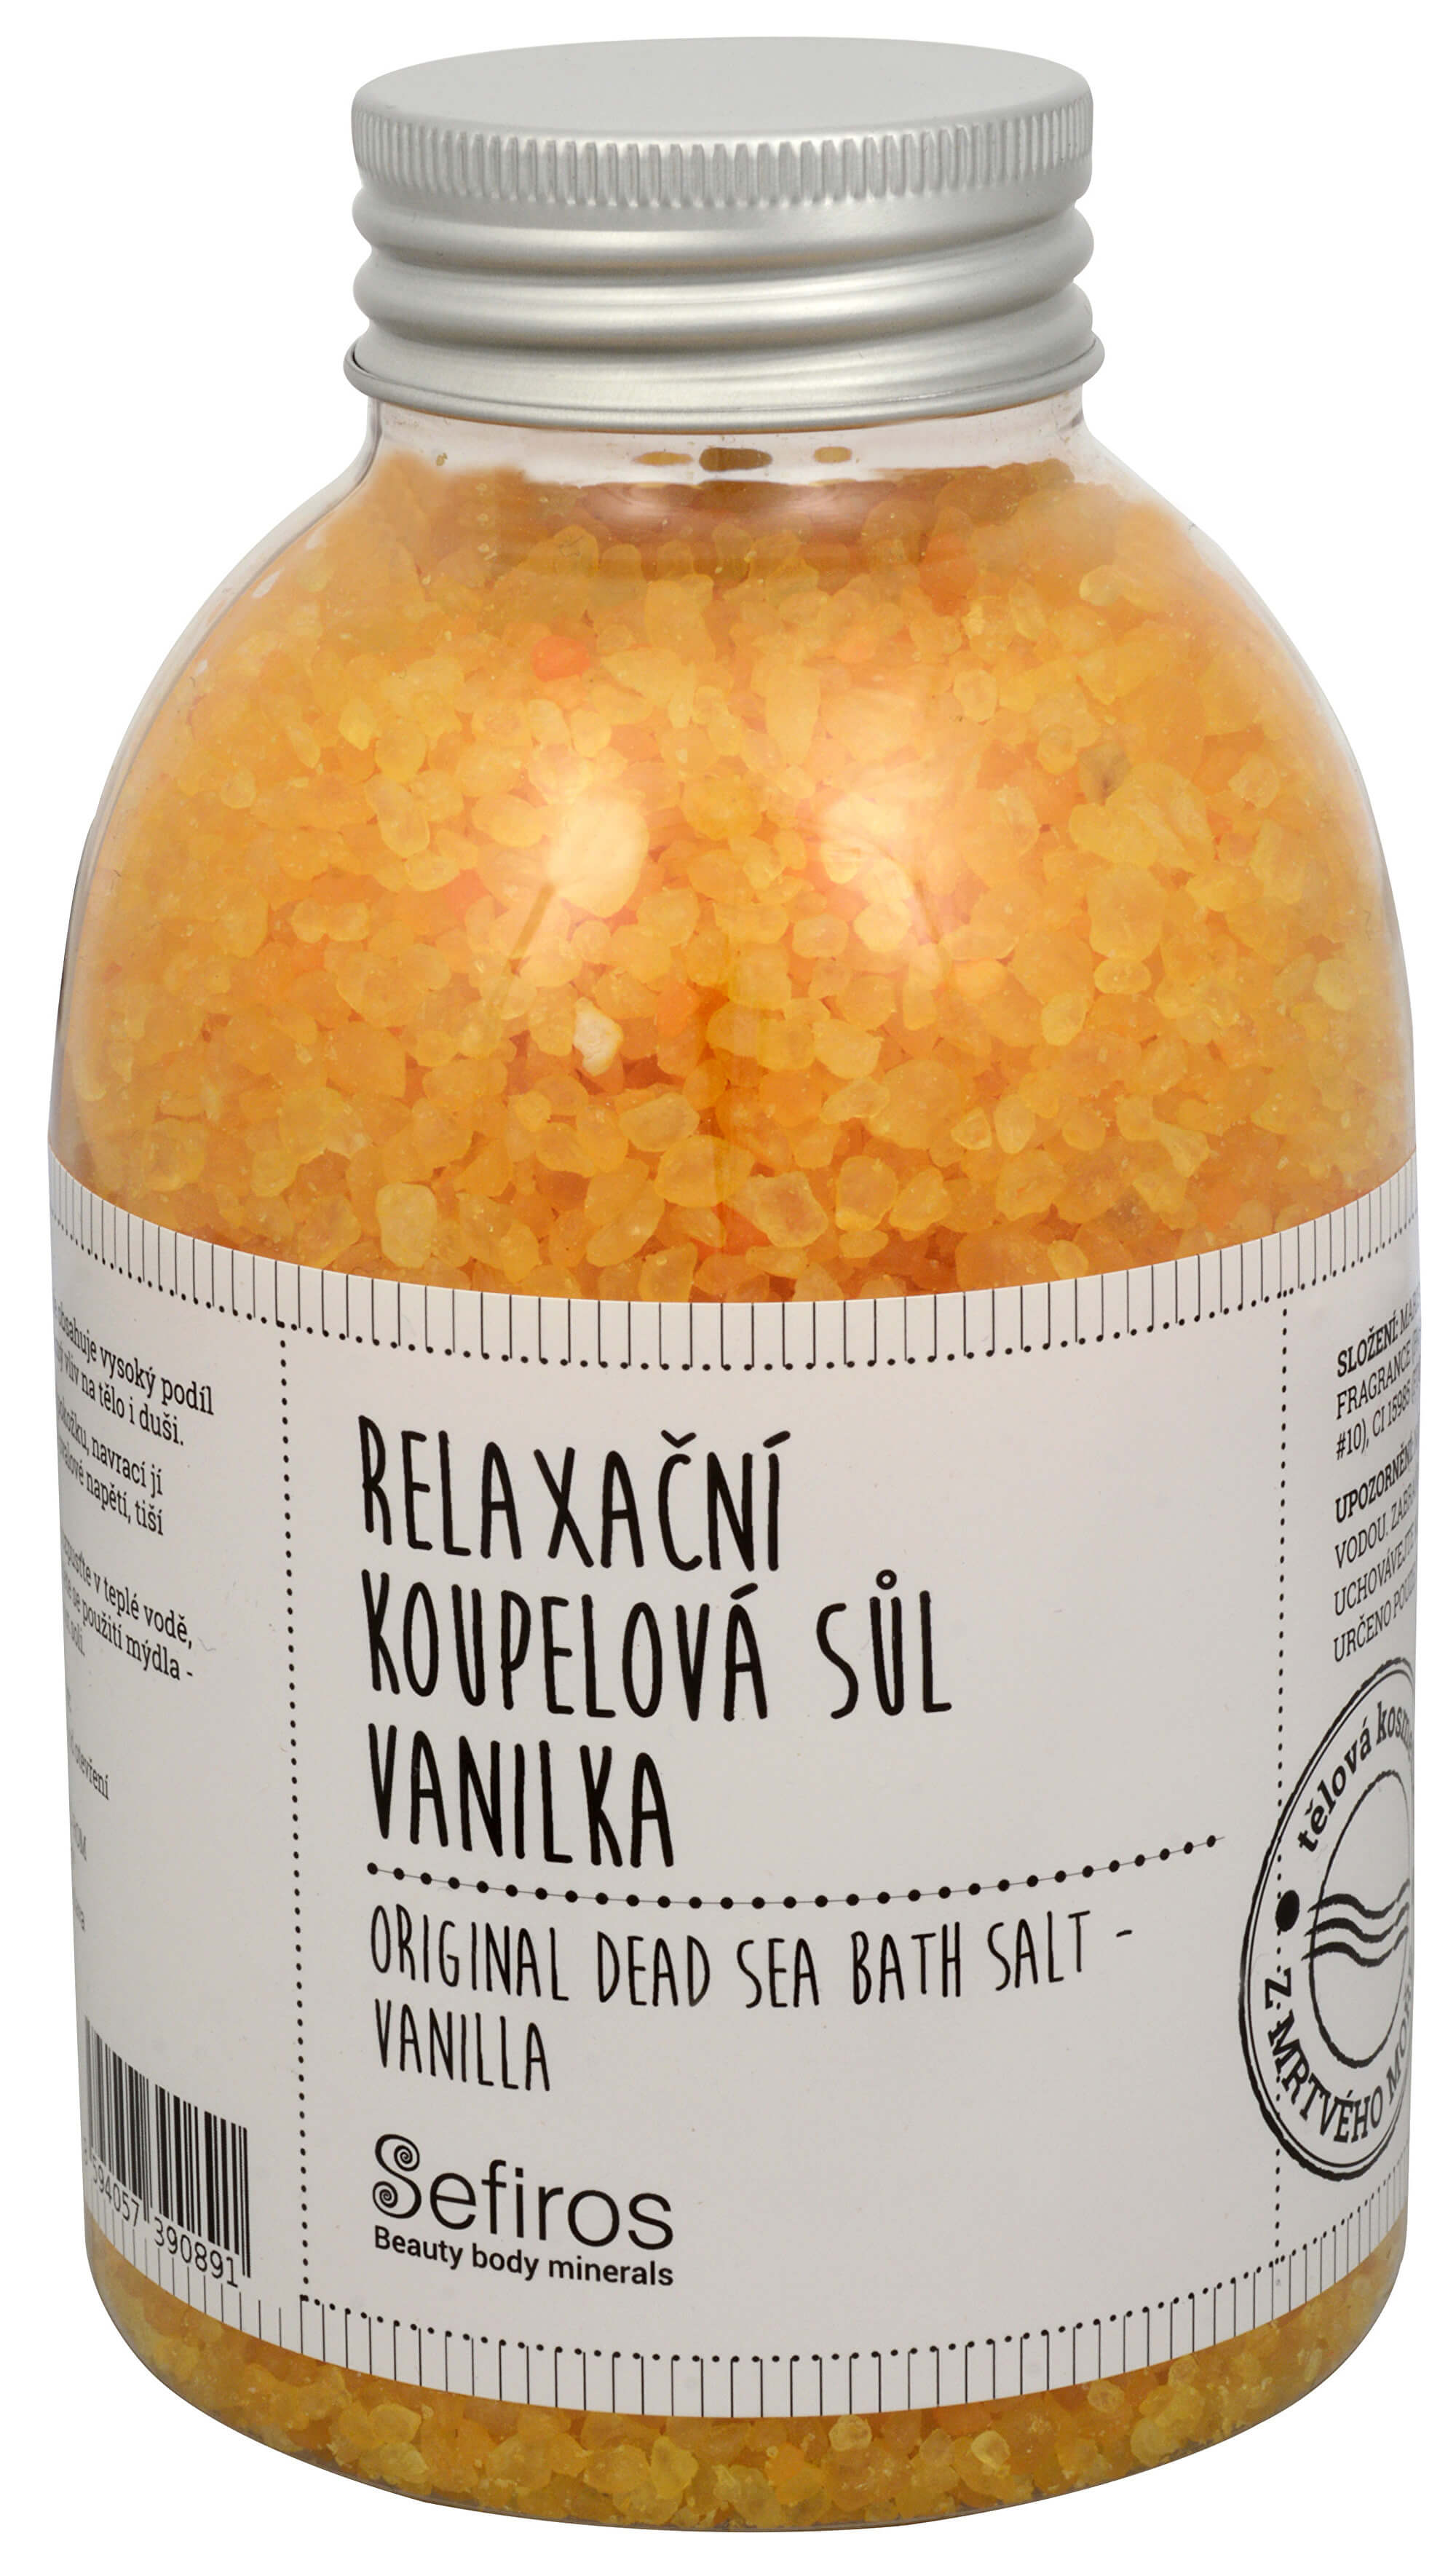 Zobrazit detail výrobku Sefiross Relaxační koupelová sůl Vanilka (Original Dead Sea Bath Salt) 500 g